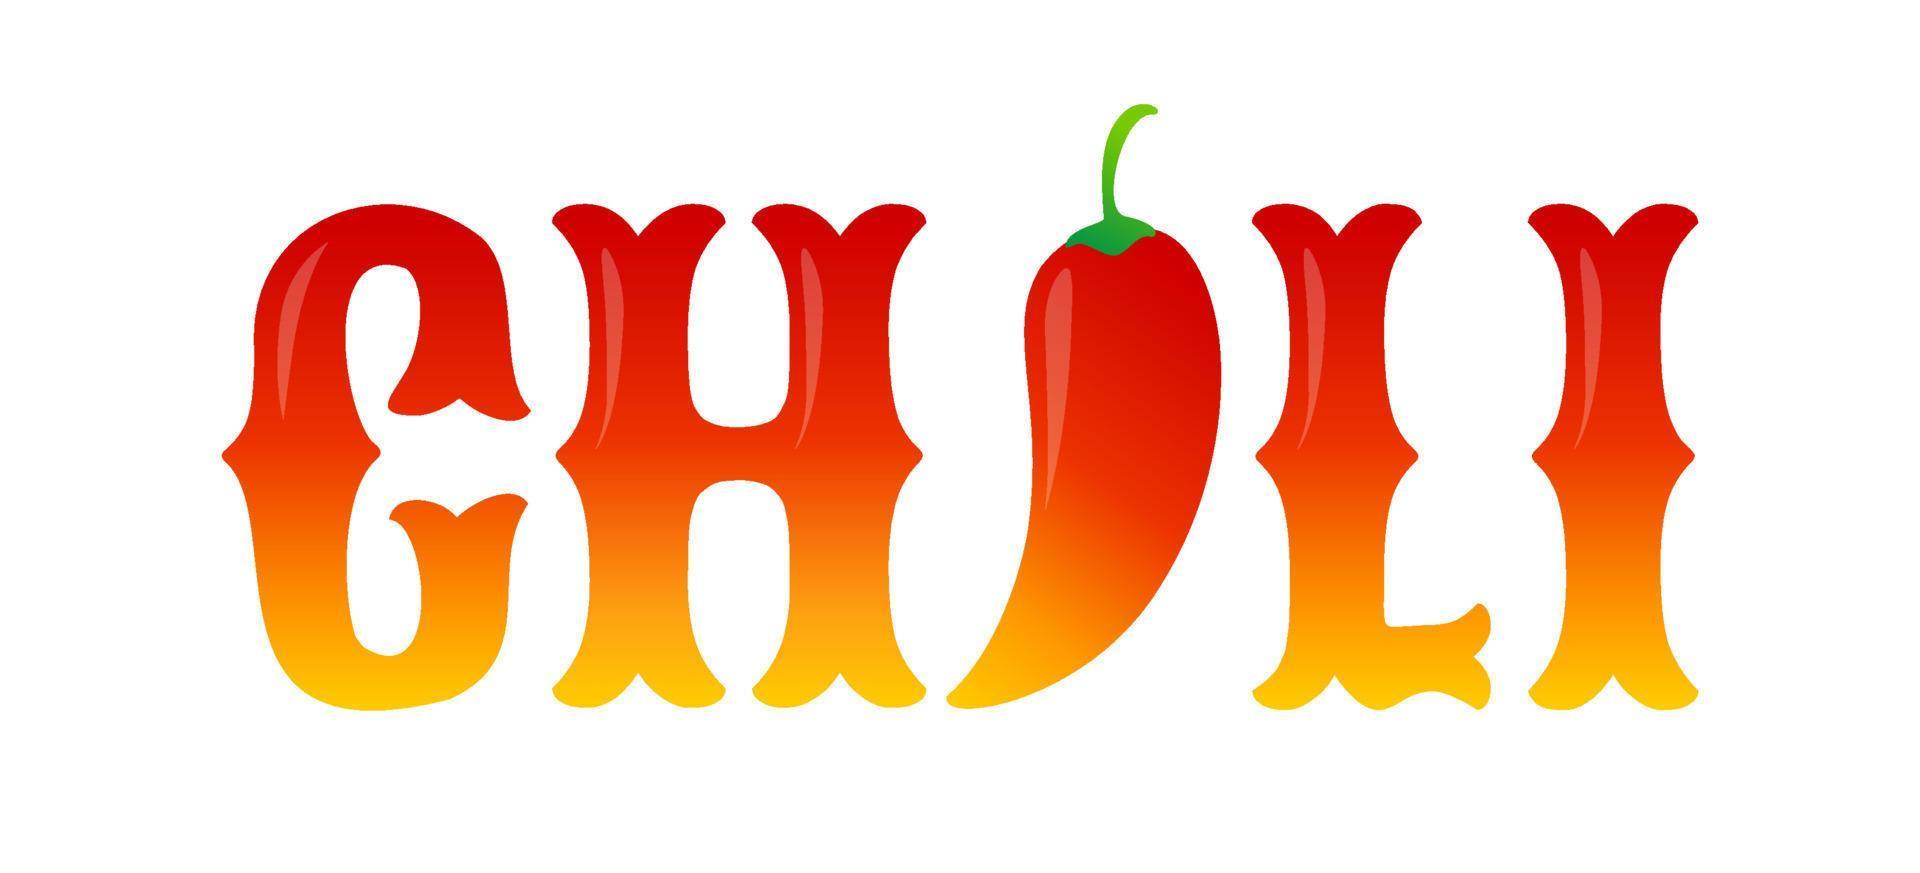 vektor typografi med röd chili peppar. kryddad mat